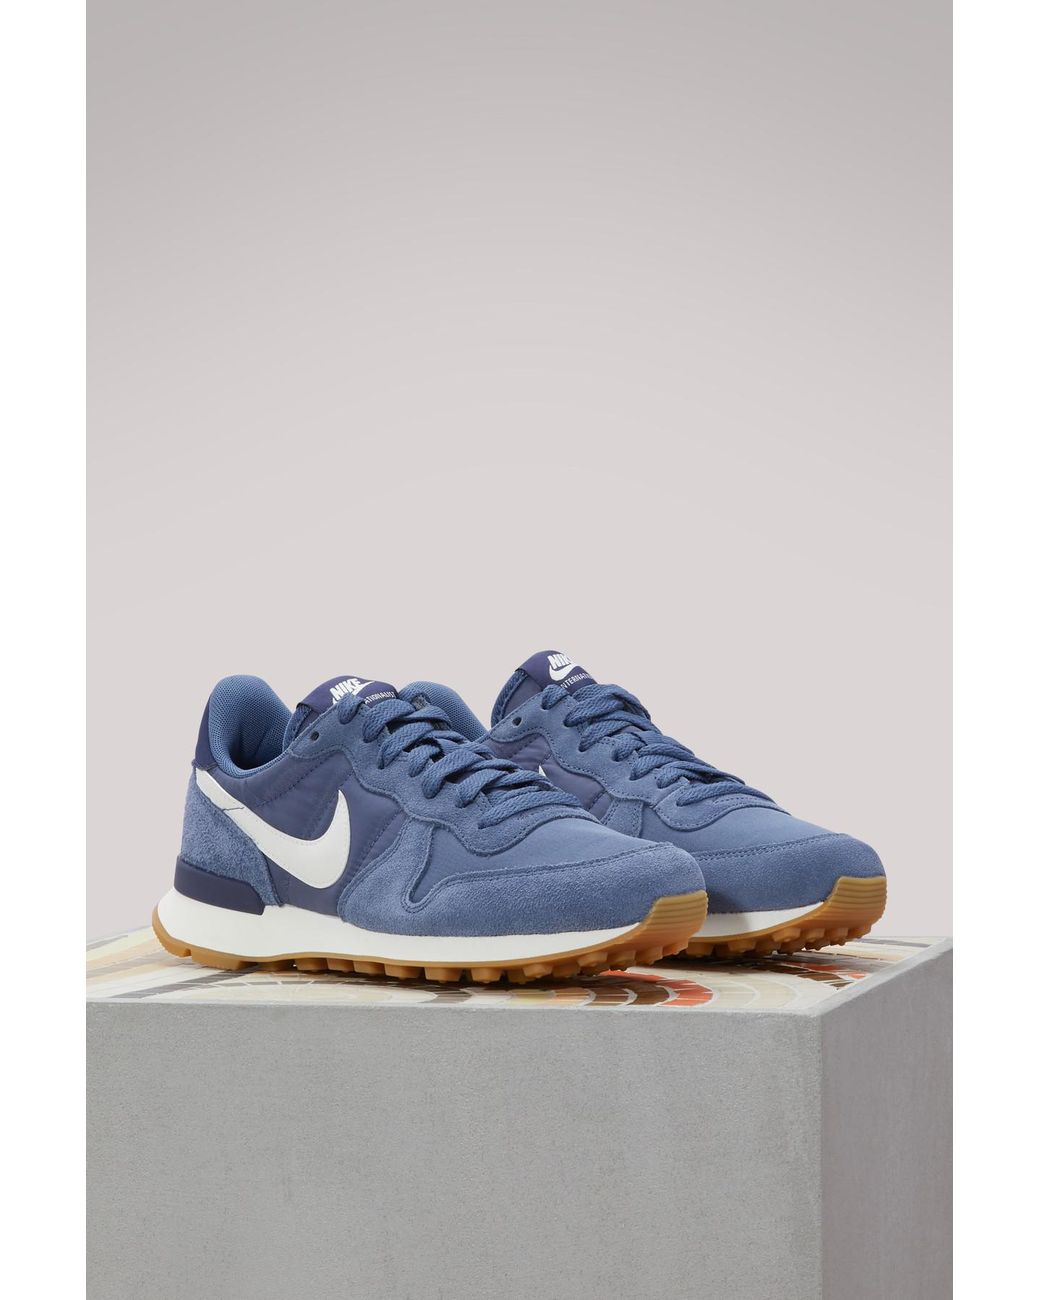 Nike Internationalist Sneakers in Blue | Lyst Australia